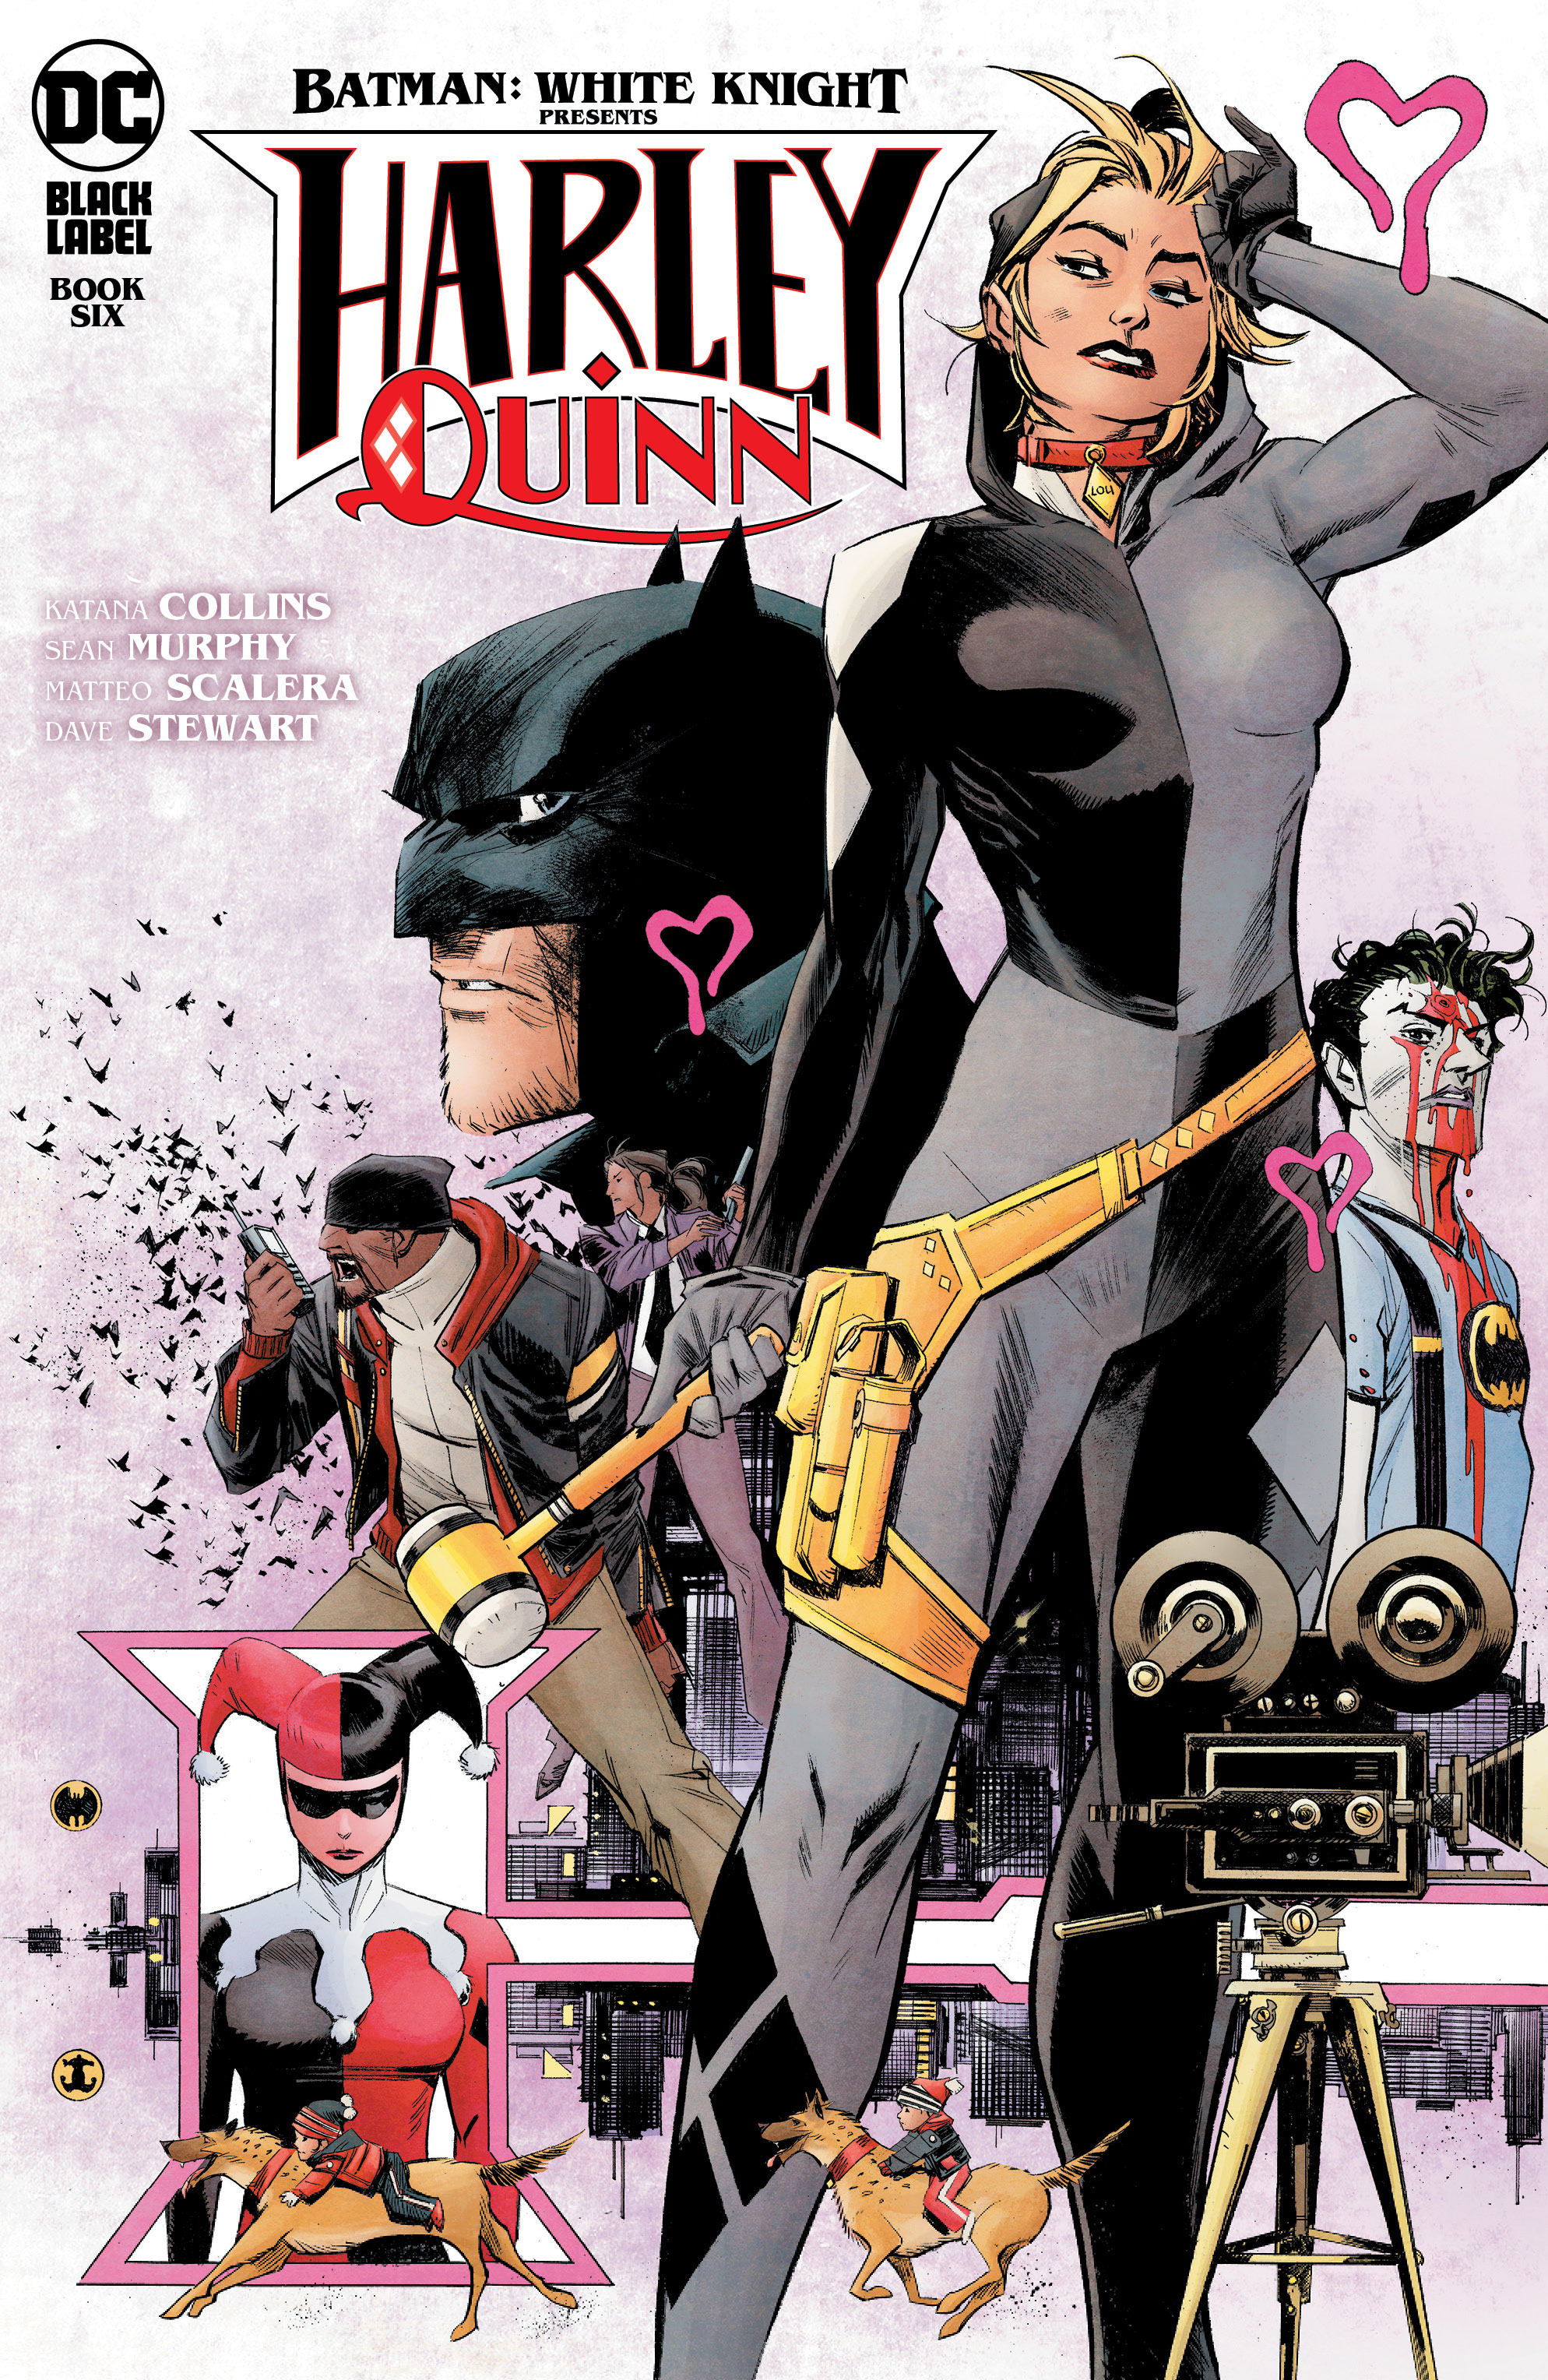 Batman White Knight Presents Harley Quinn #6 Cover A Sean Murphy (Mature) (Of 6)